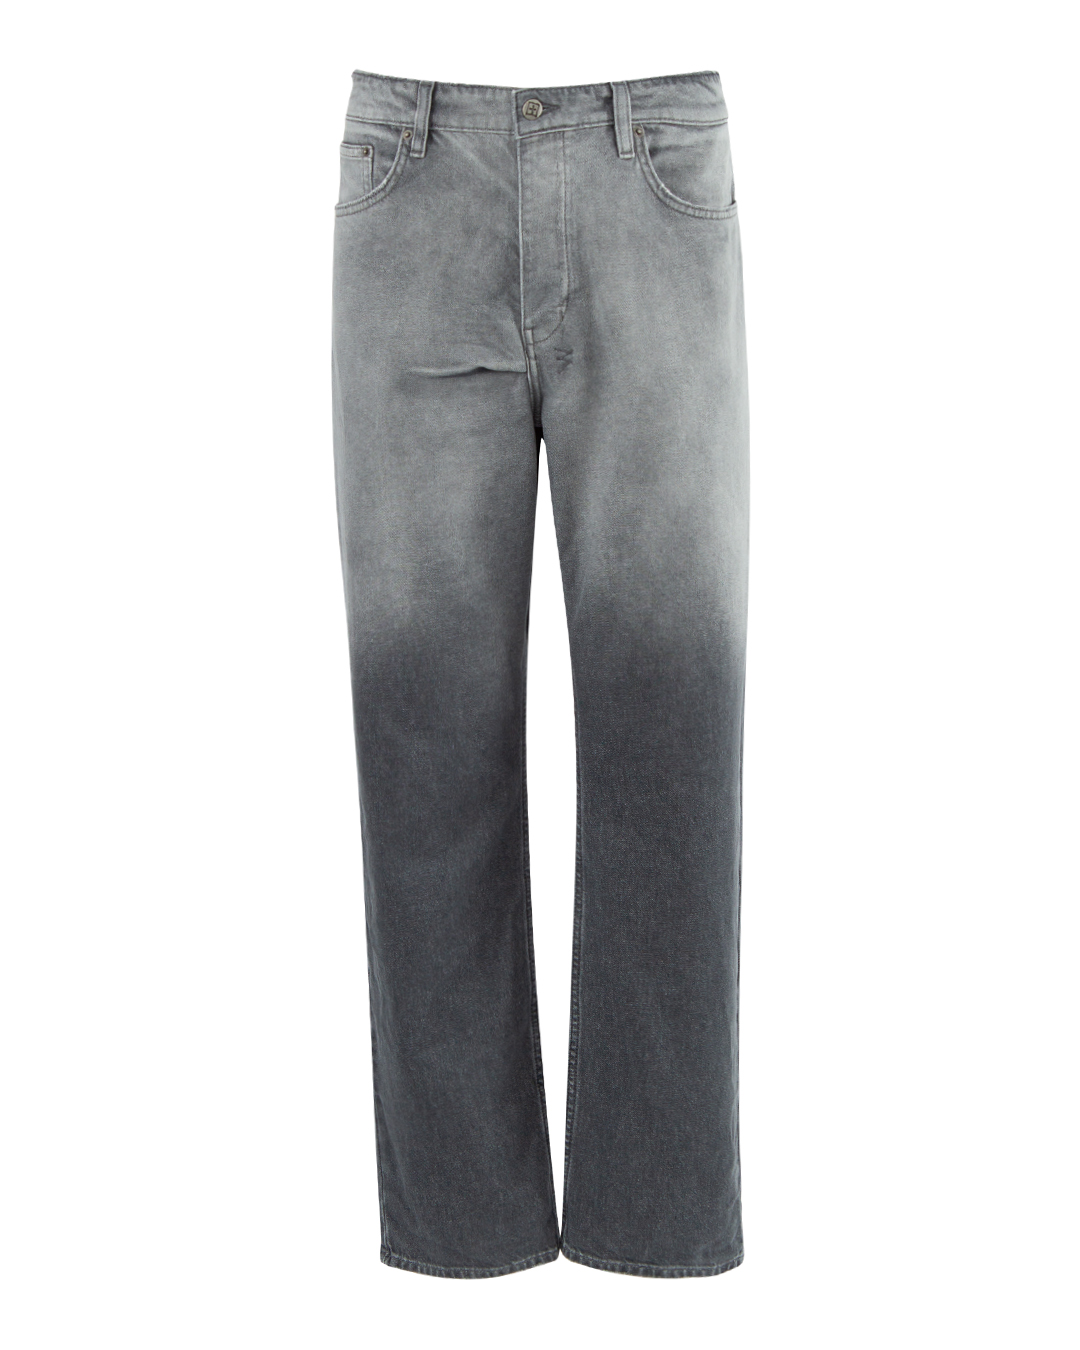 джинсы KSUBI MPF23DJ012 серый 34, размер 34 - фото 1